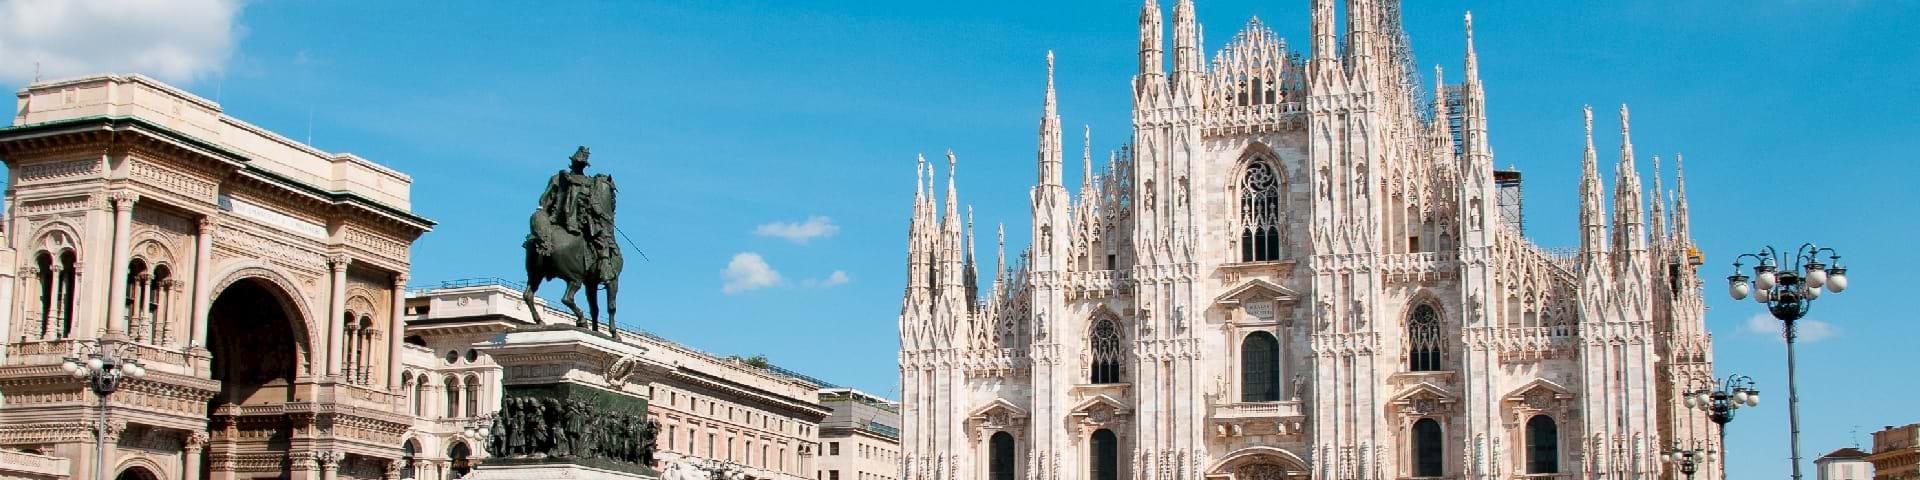 Milan Cathedral Tours